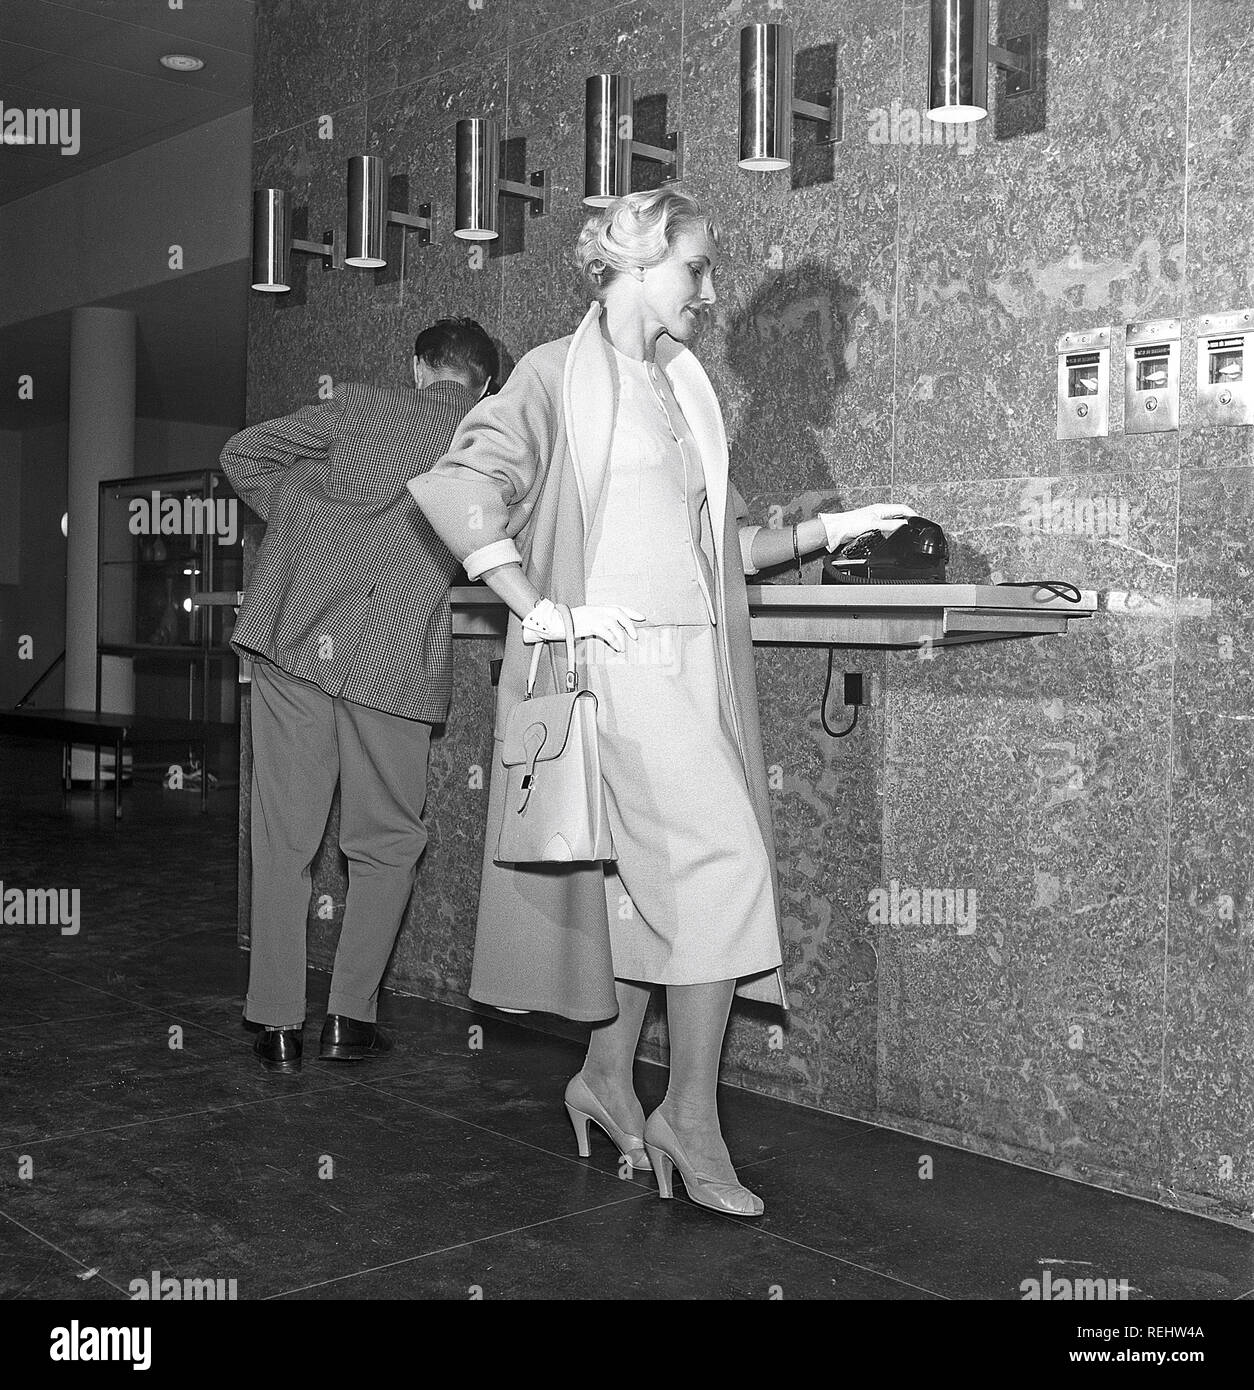 Frau in den 1950er Jahren. Ein junges Paar in einem Flughafen, ist über das Telefon. Sie ist modisch in einem typischen 50er Jahre zwei Stück kleid mit passendem Rock und Jacke gekleidet, mit einem leichten Mantel. Die Handschuhe, Schuhe und Tasche sind in Übereinstimmung zu bringen. Schweden 1958. Foto Kristoffersson Ref CB 15-7 Stockfoto